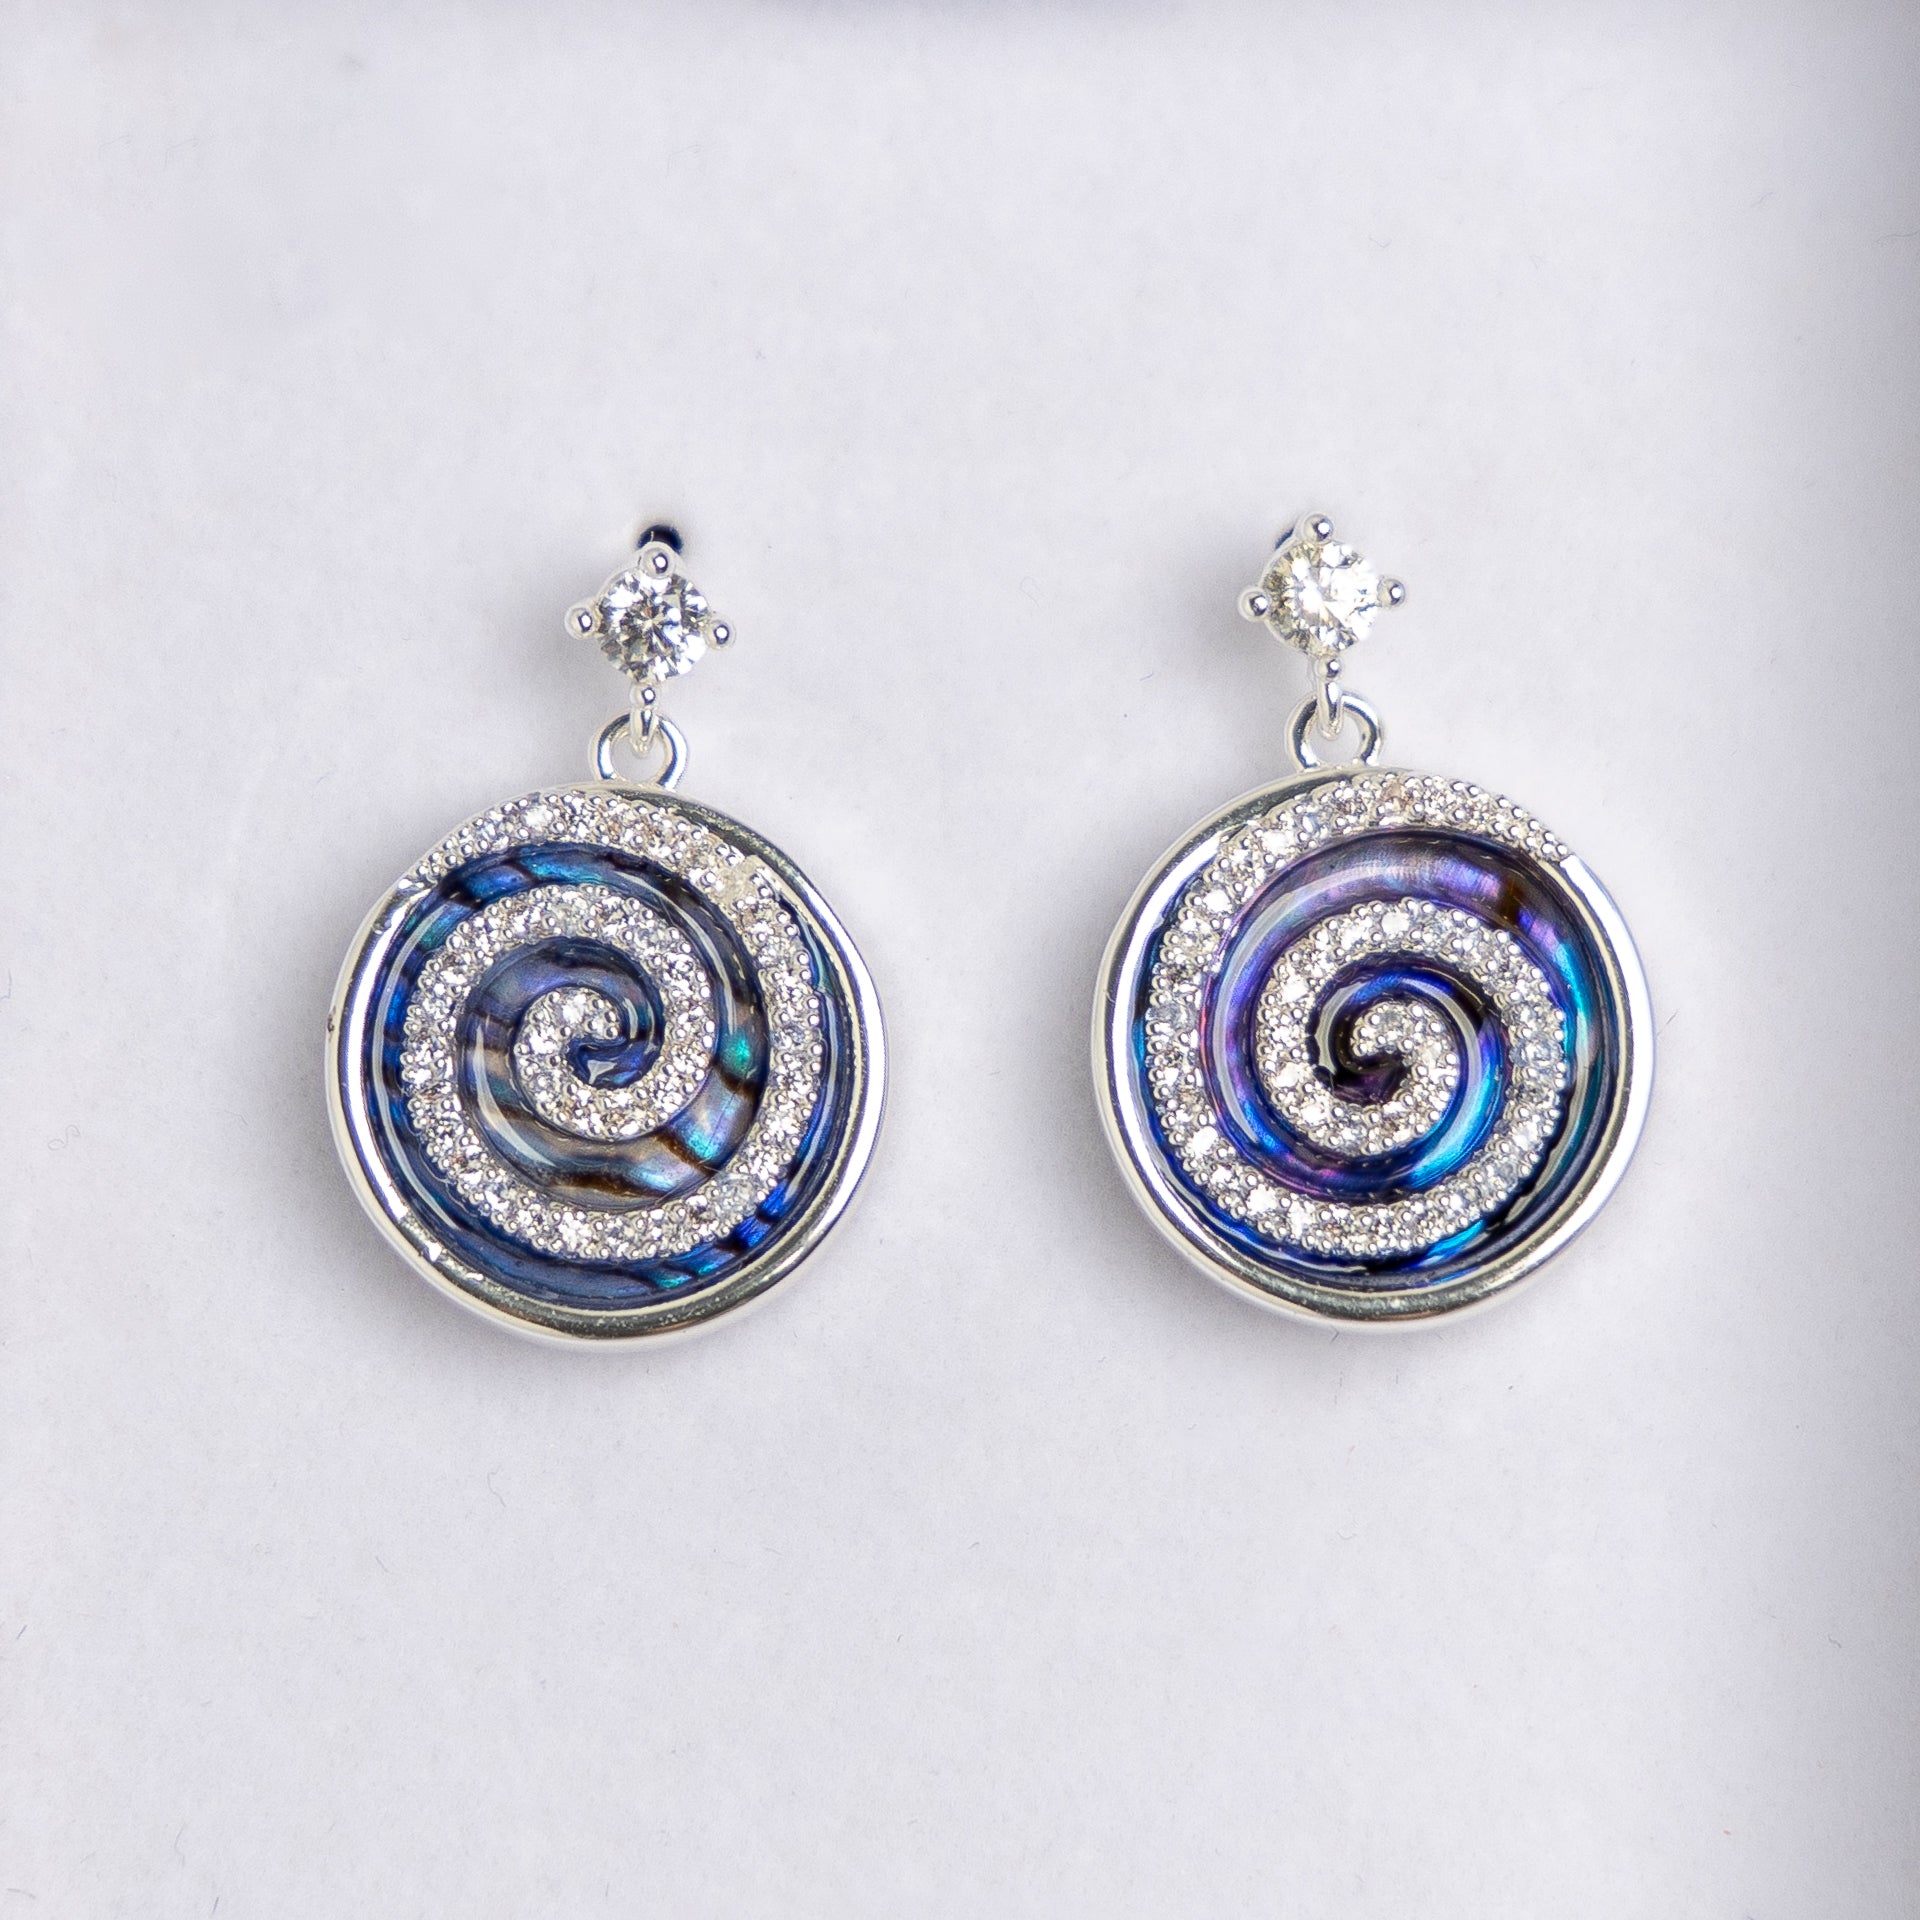 Pāua Shell Swirl Earrings